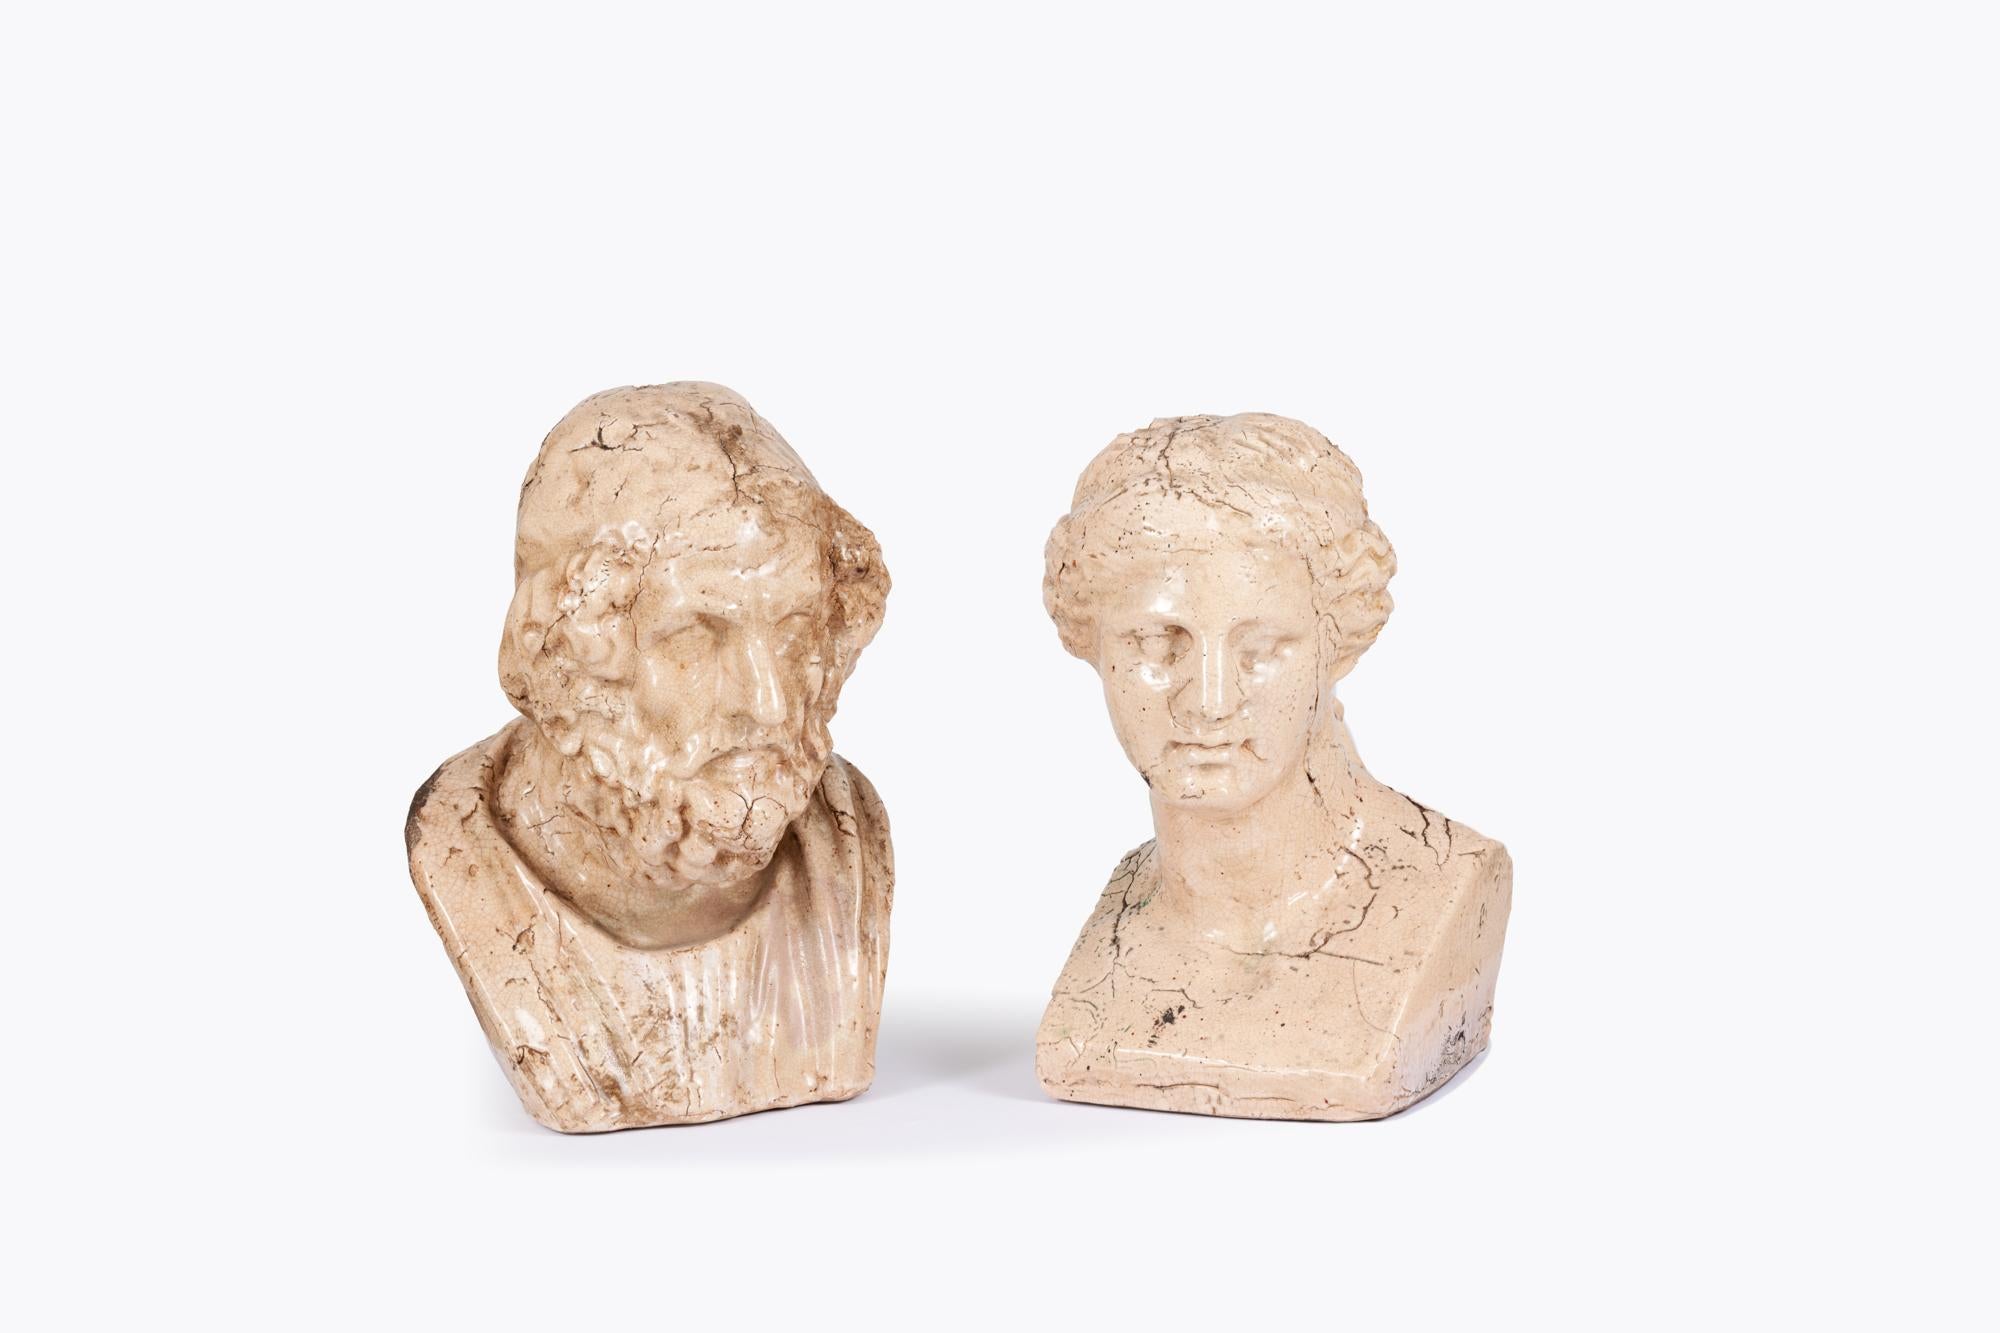 Keramikbüstenpaar des 19. Jahrhunderts, das die griechischen Figuren Aphrodite und Homer darstellt, die beide die Illusion von gealtertem Stein vermitteln.

Die Büste von Homer basiert auf einer stark restaurierten römischen Kopie eines